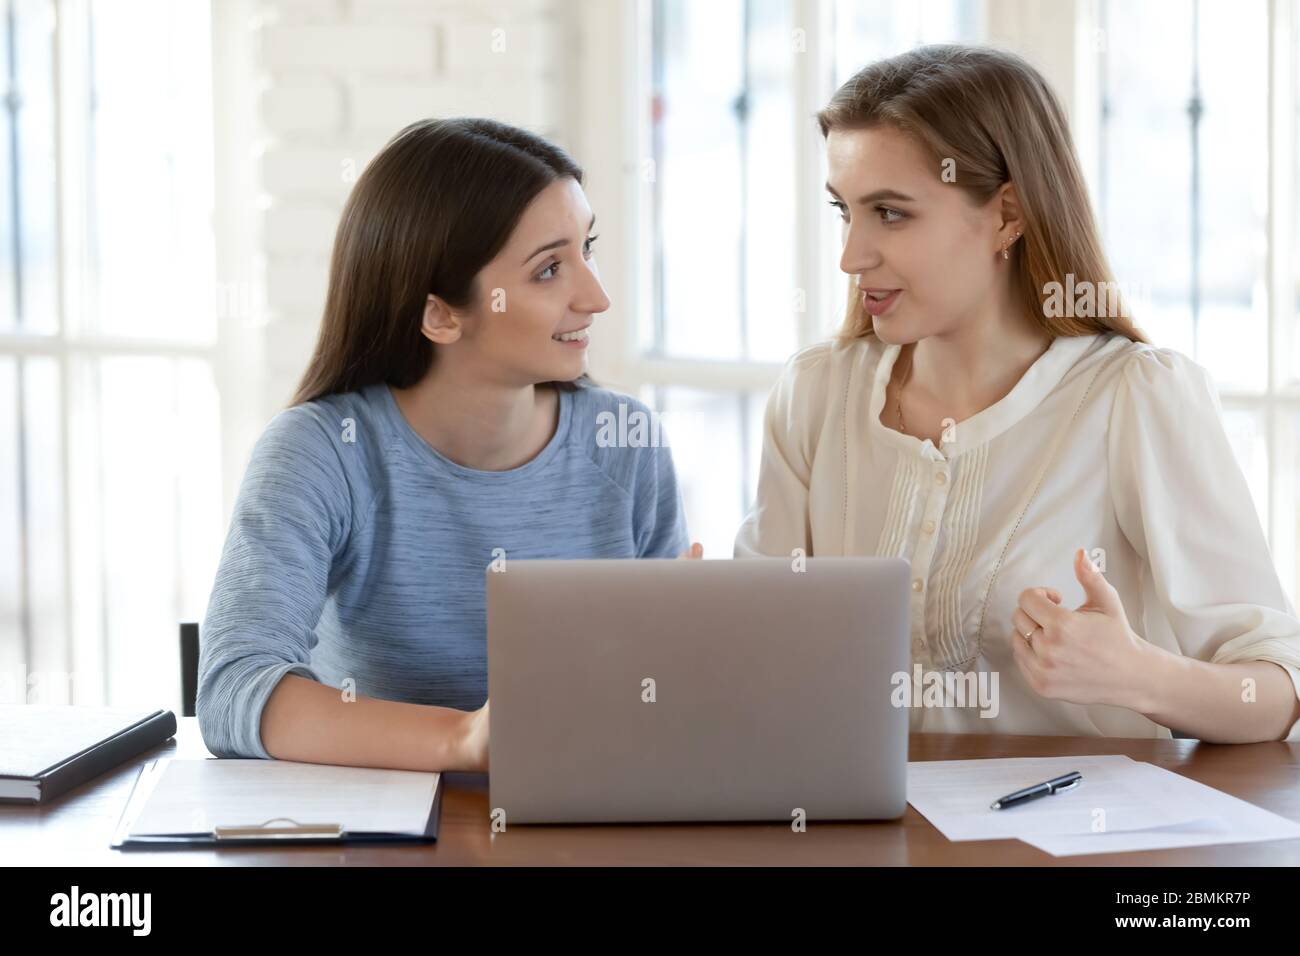 Les collègues femmes font un brainstorming sur un ordinateur portable Banque D'Images